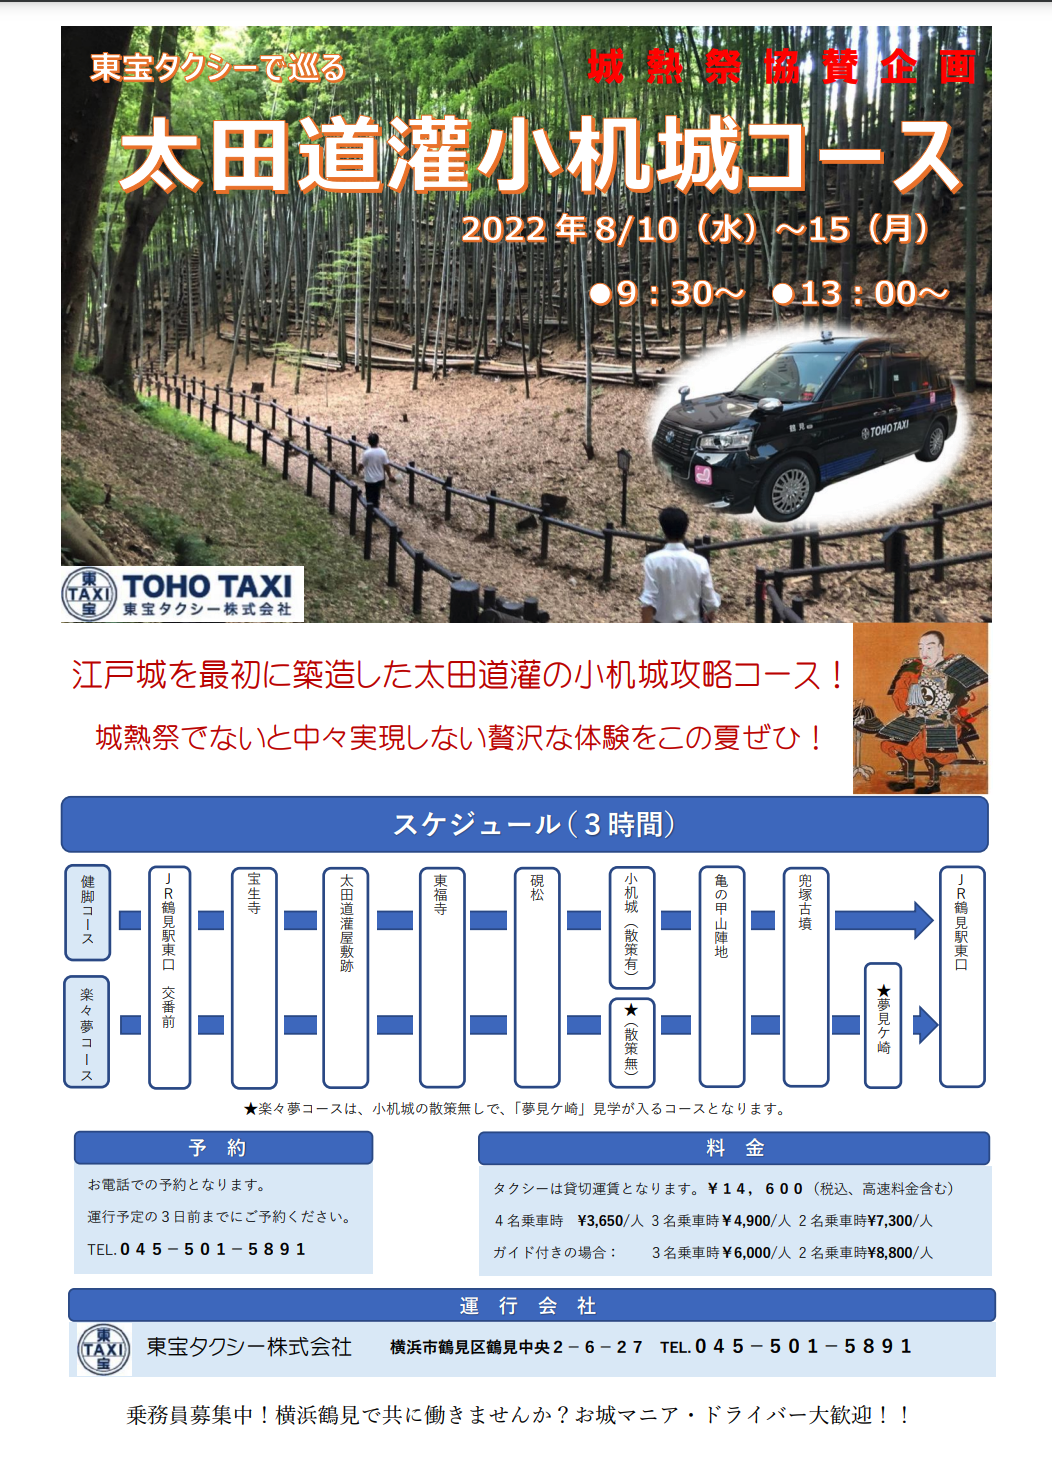 【城熱祭協賛企画】東宝タクシーで巡る「太田道灌小机城コース」